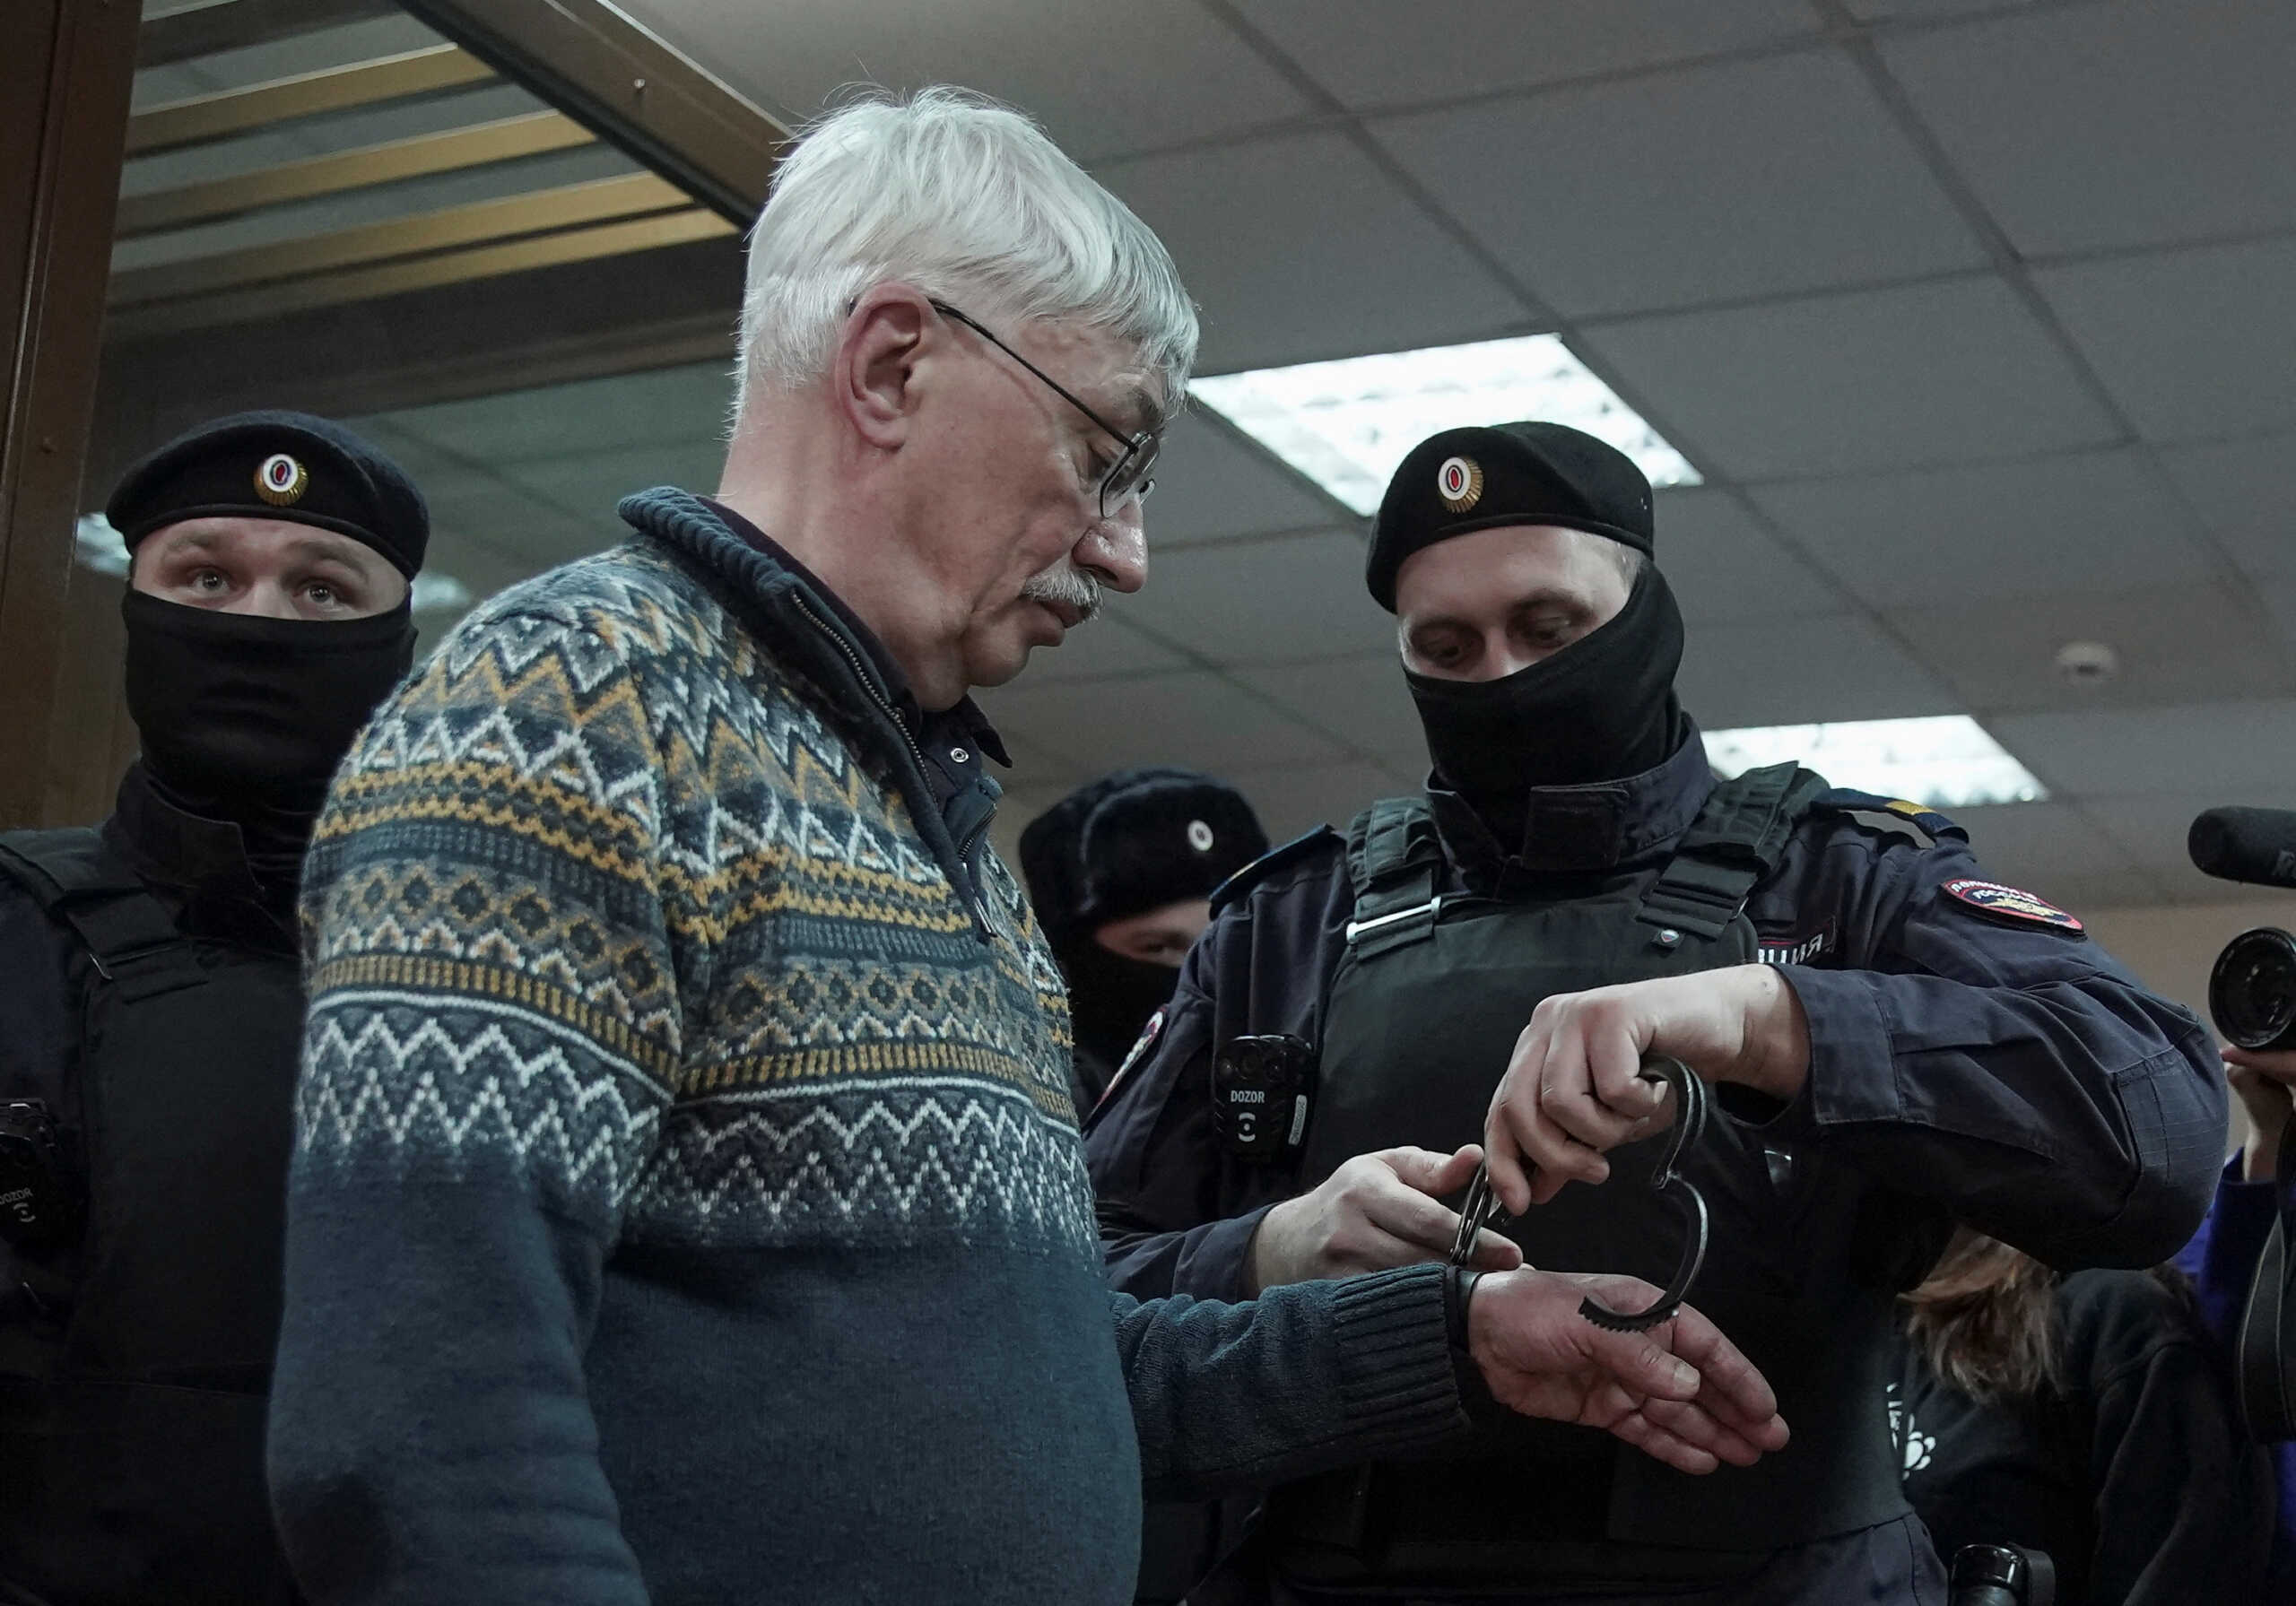 Η Επιτροπή του Νόμπελ επιτίθεται στον Πούτιν για την καταδίκη και φυλάκιση του αντικαθεστωτικού νομπελίστα Ορλόφ